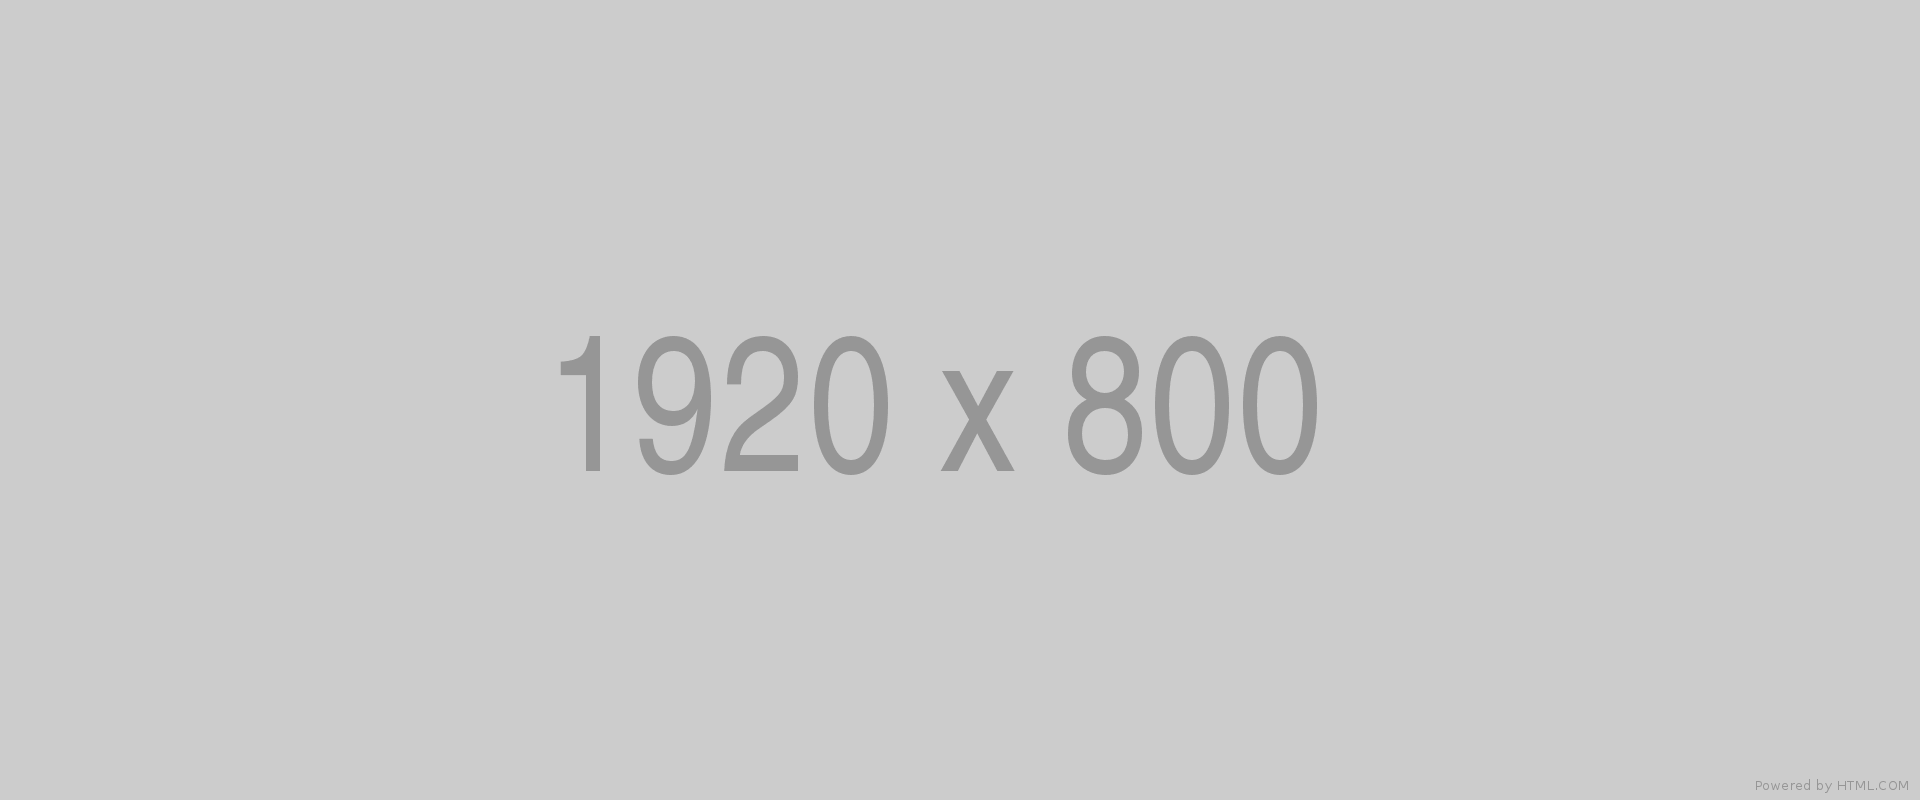 1920x800